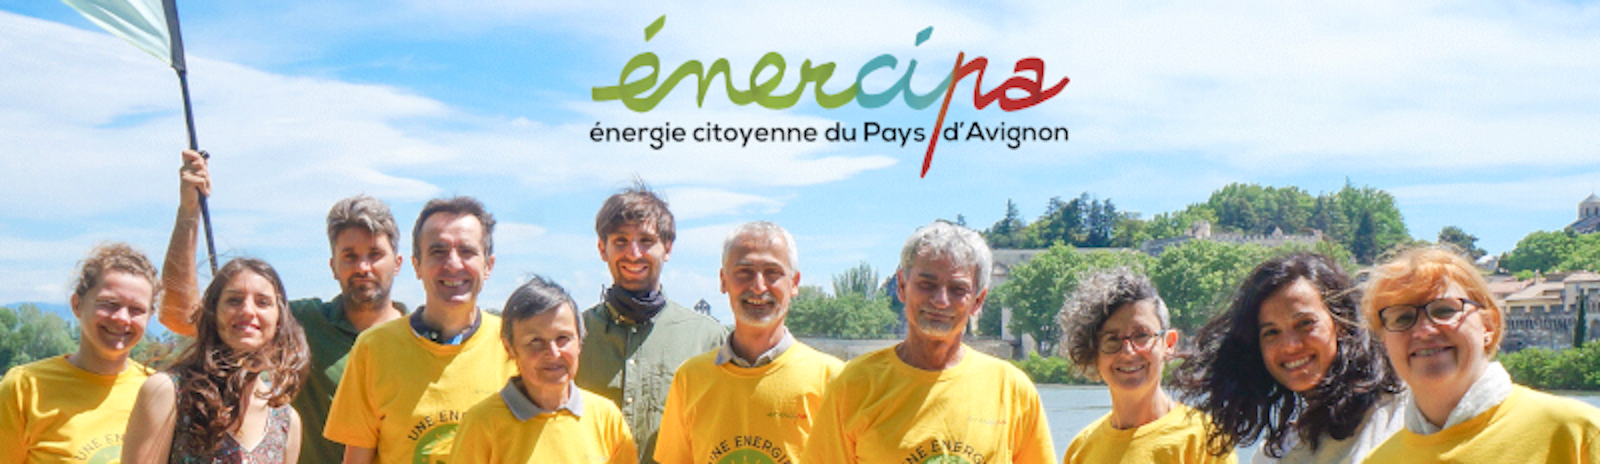 Energie Citoyenne du Pays d'Avignon